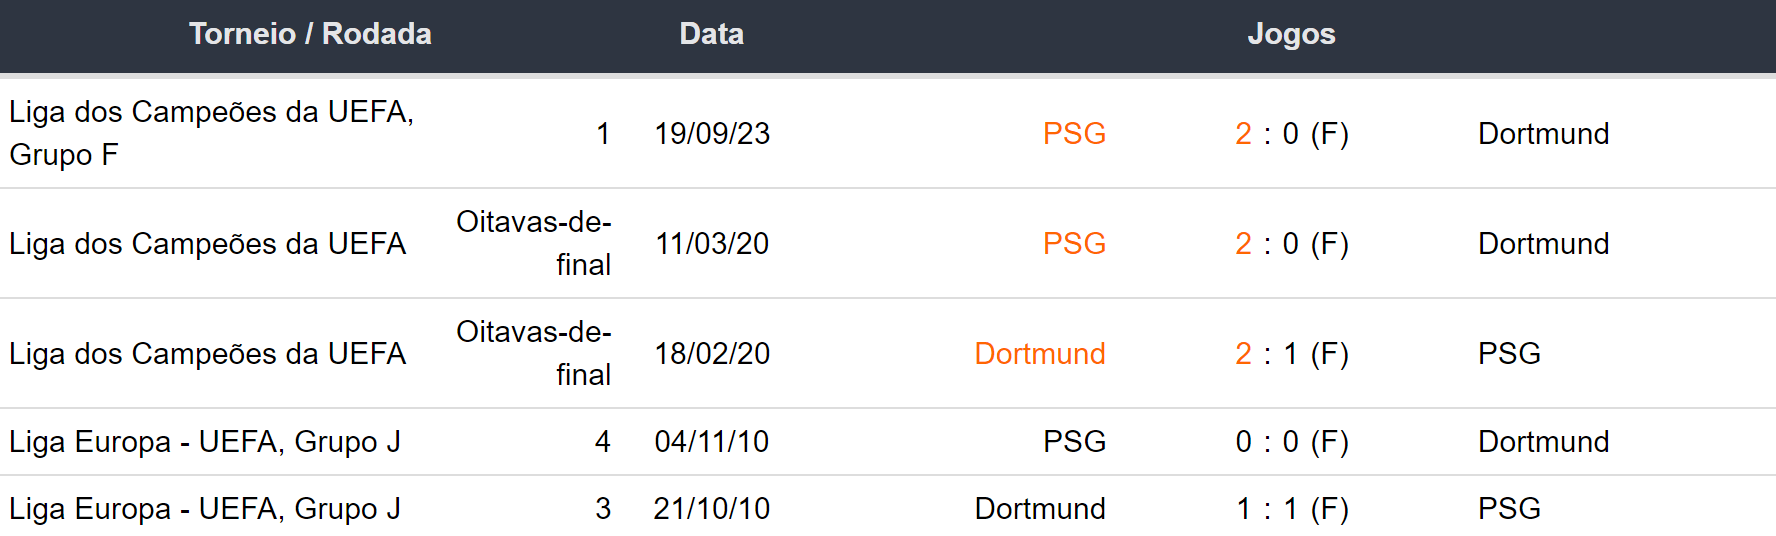 Ultimos 5 encontros Borussia Dortmund x Psg 131223